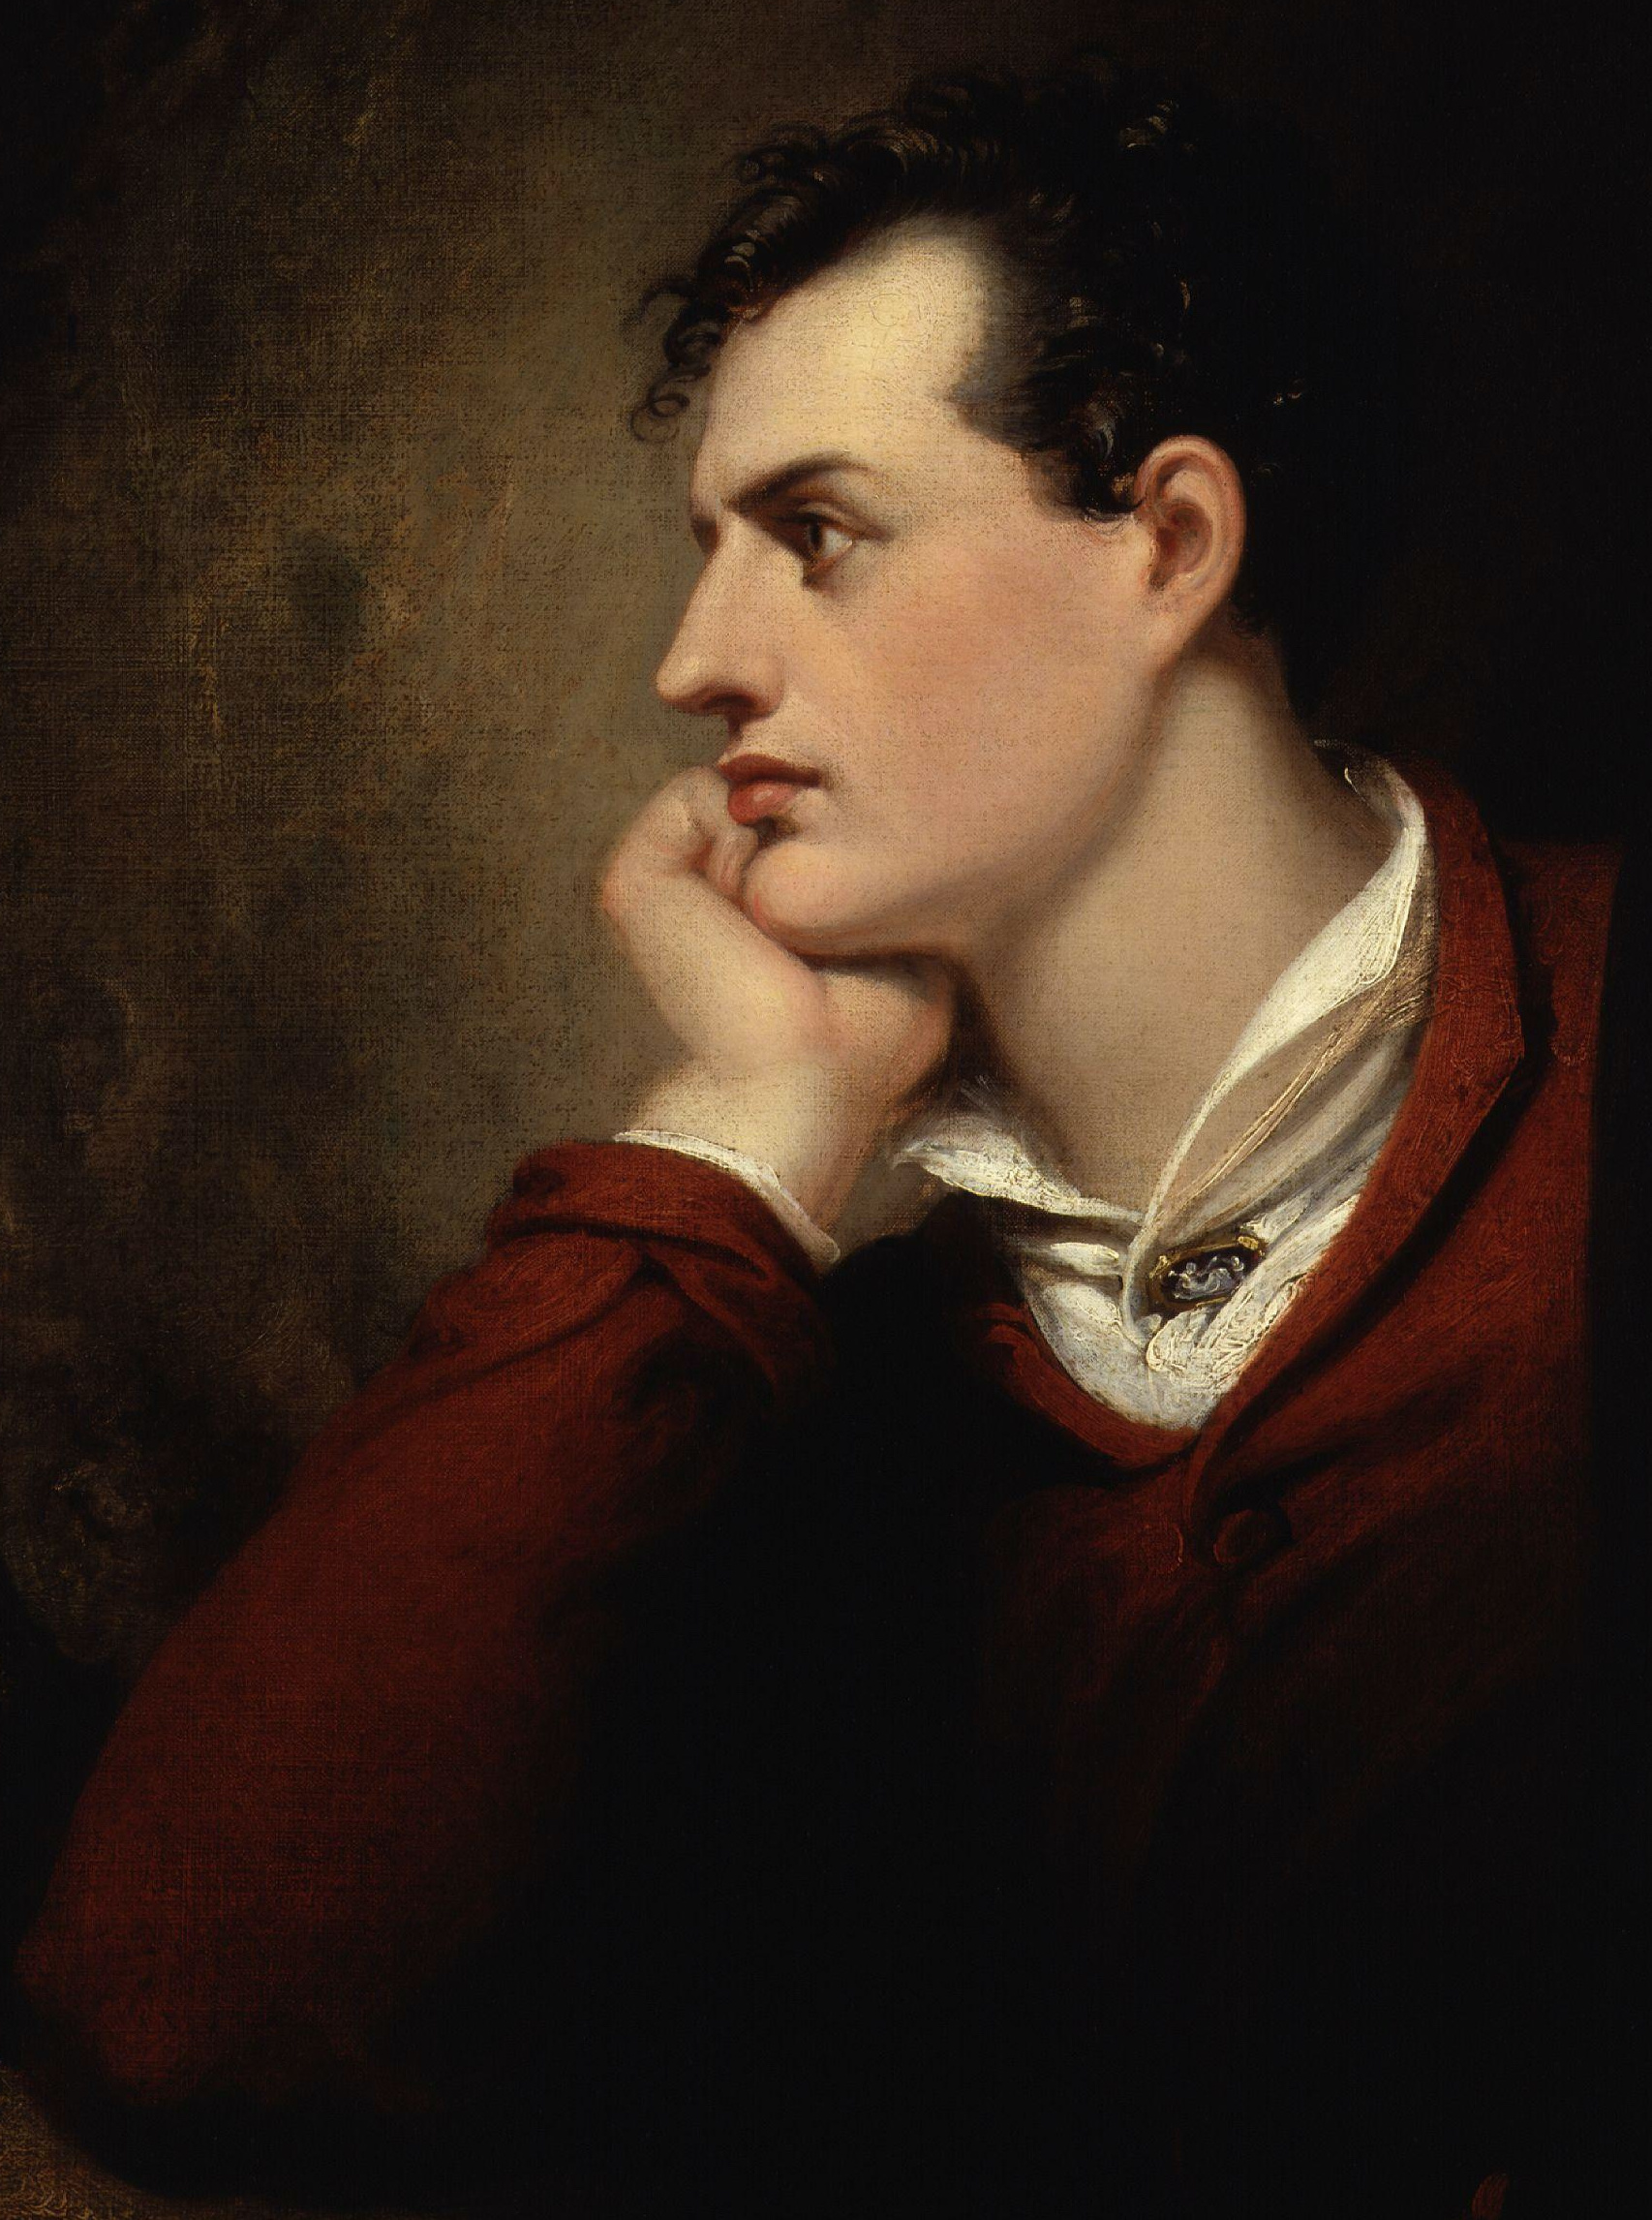 George Gordon Byron, 6th Baron Byron